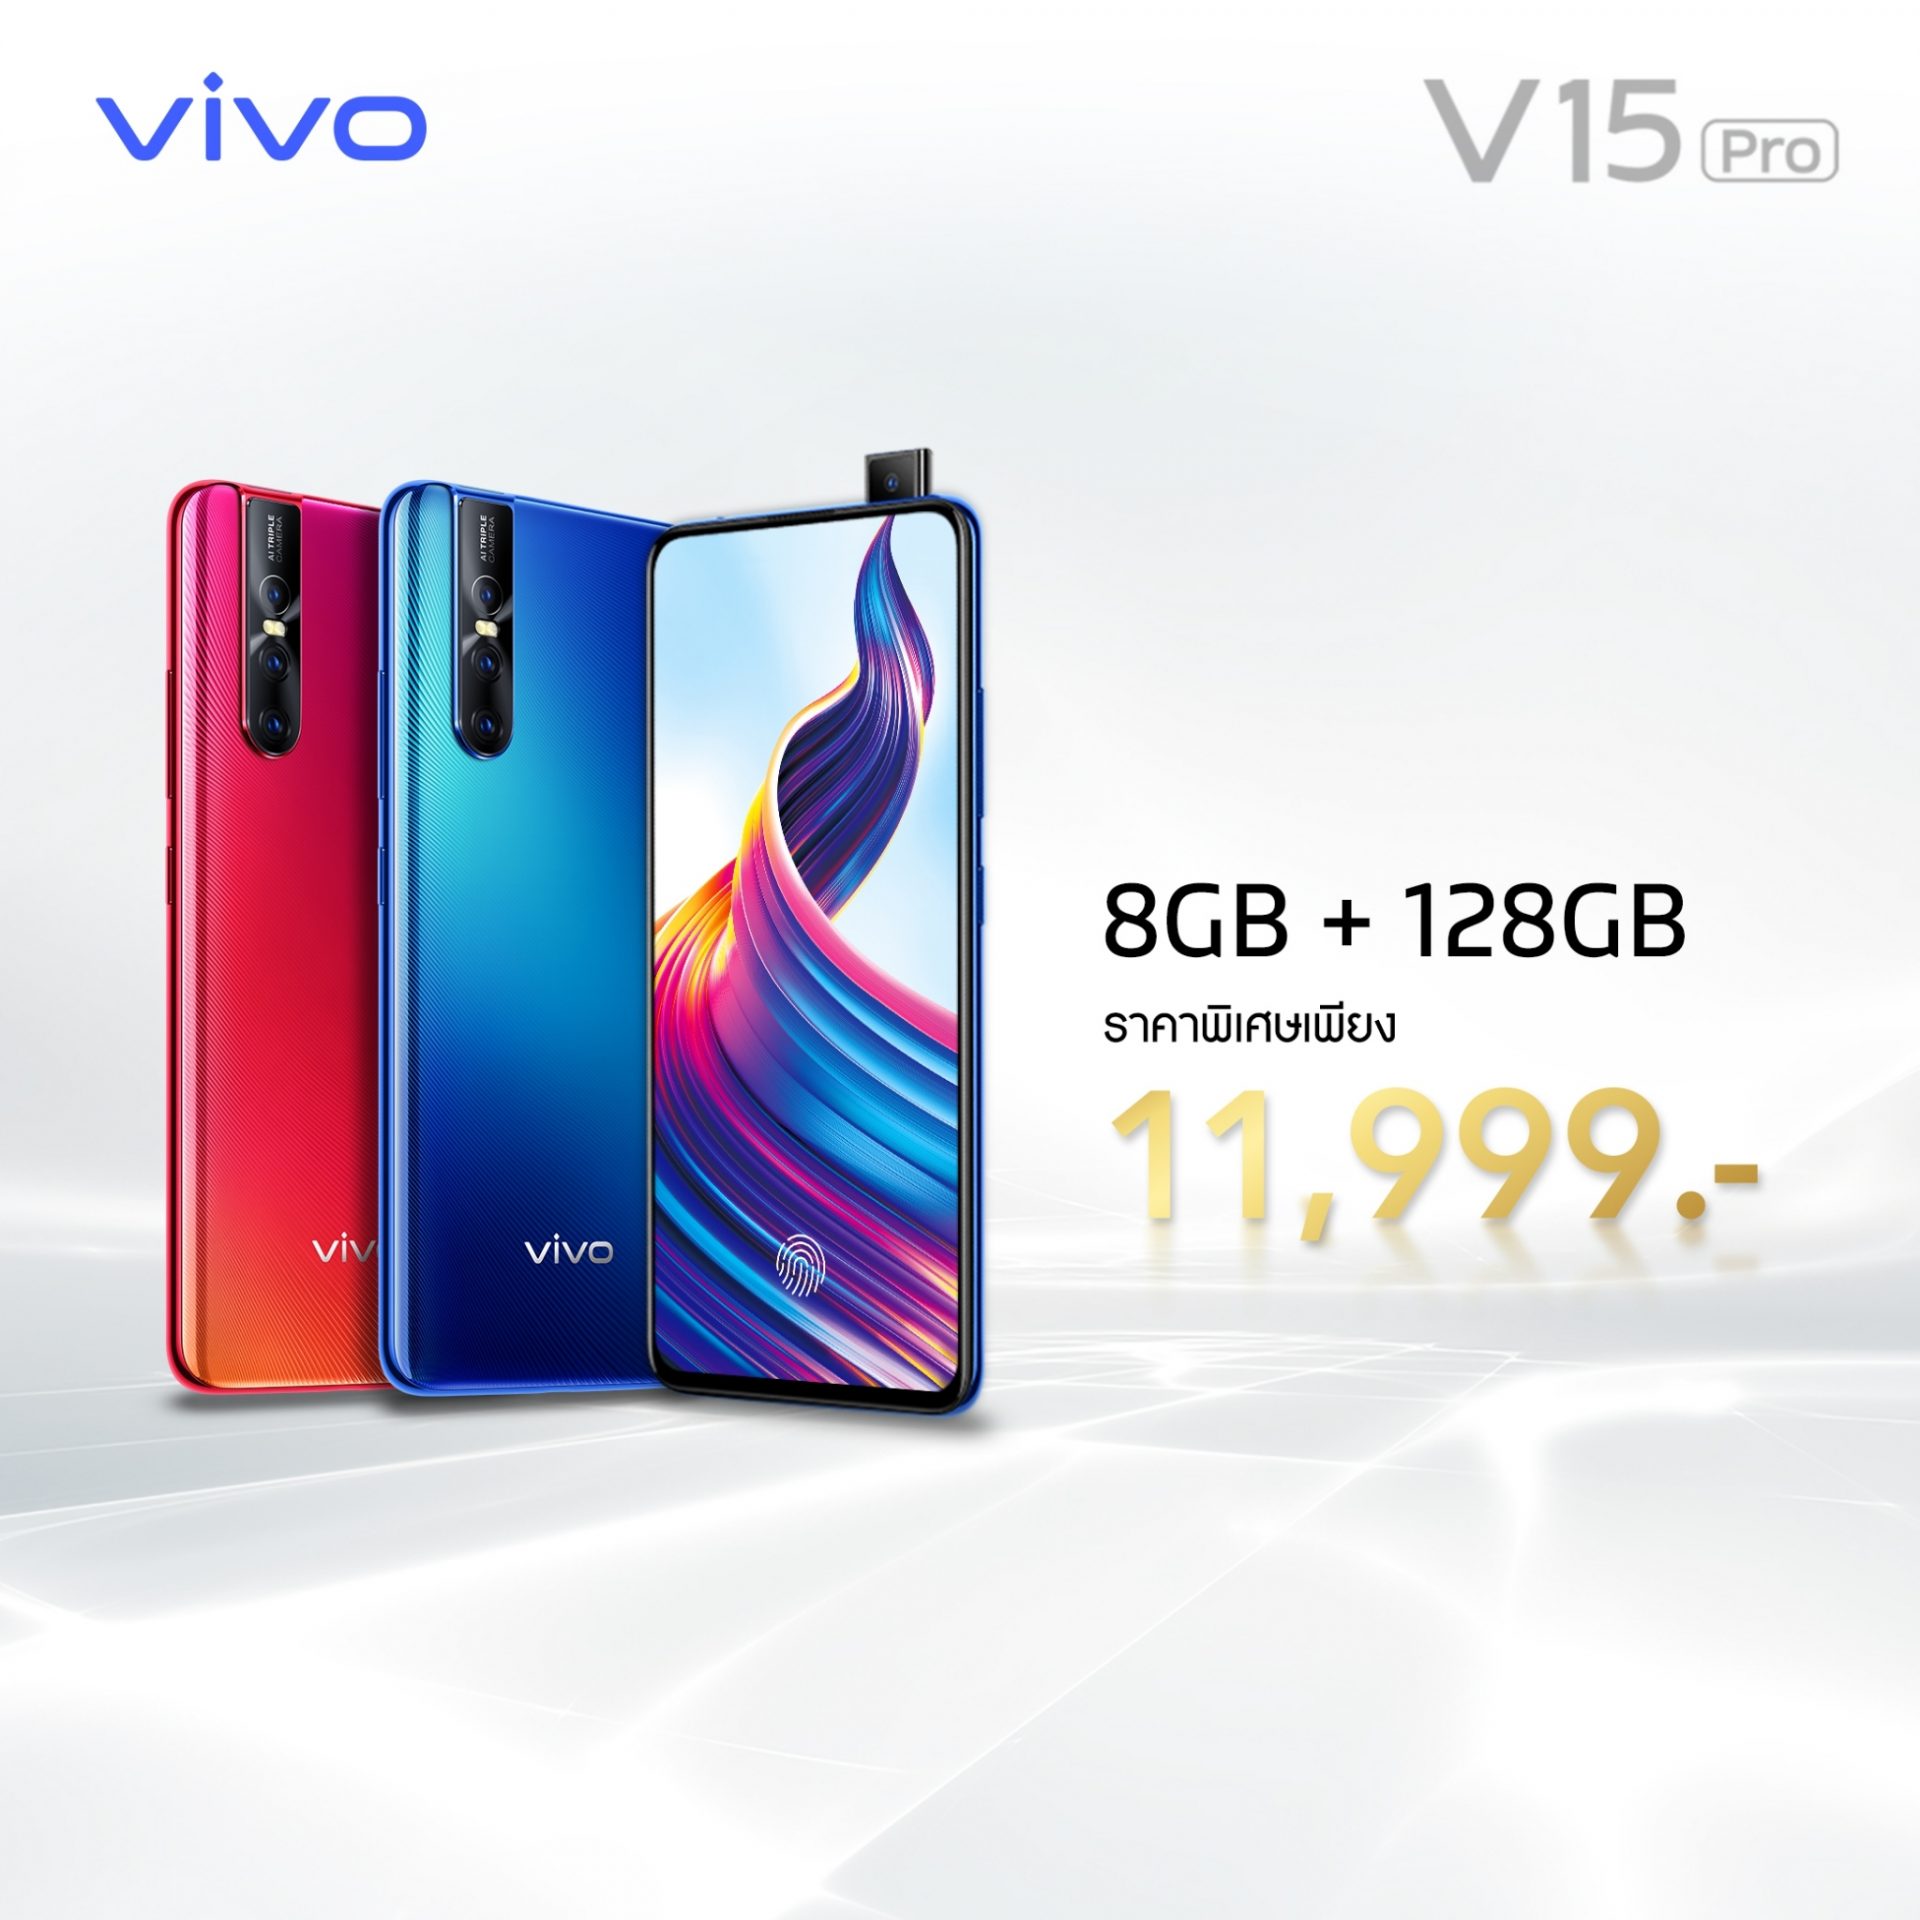 ปรับราคาอีกครั้ง!! Vivo V15 Pro 8GB + 128GB เหลือเพียง 11,999 บาท เท่านั้น